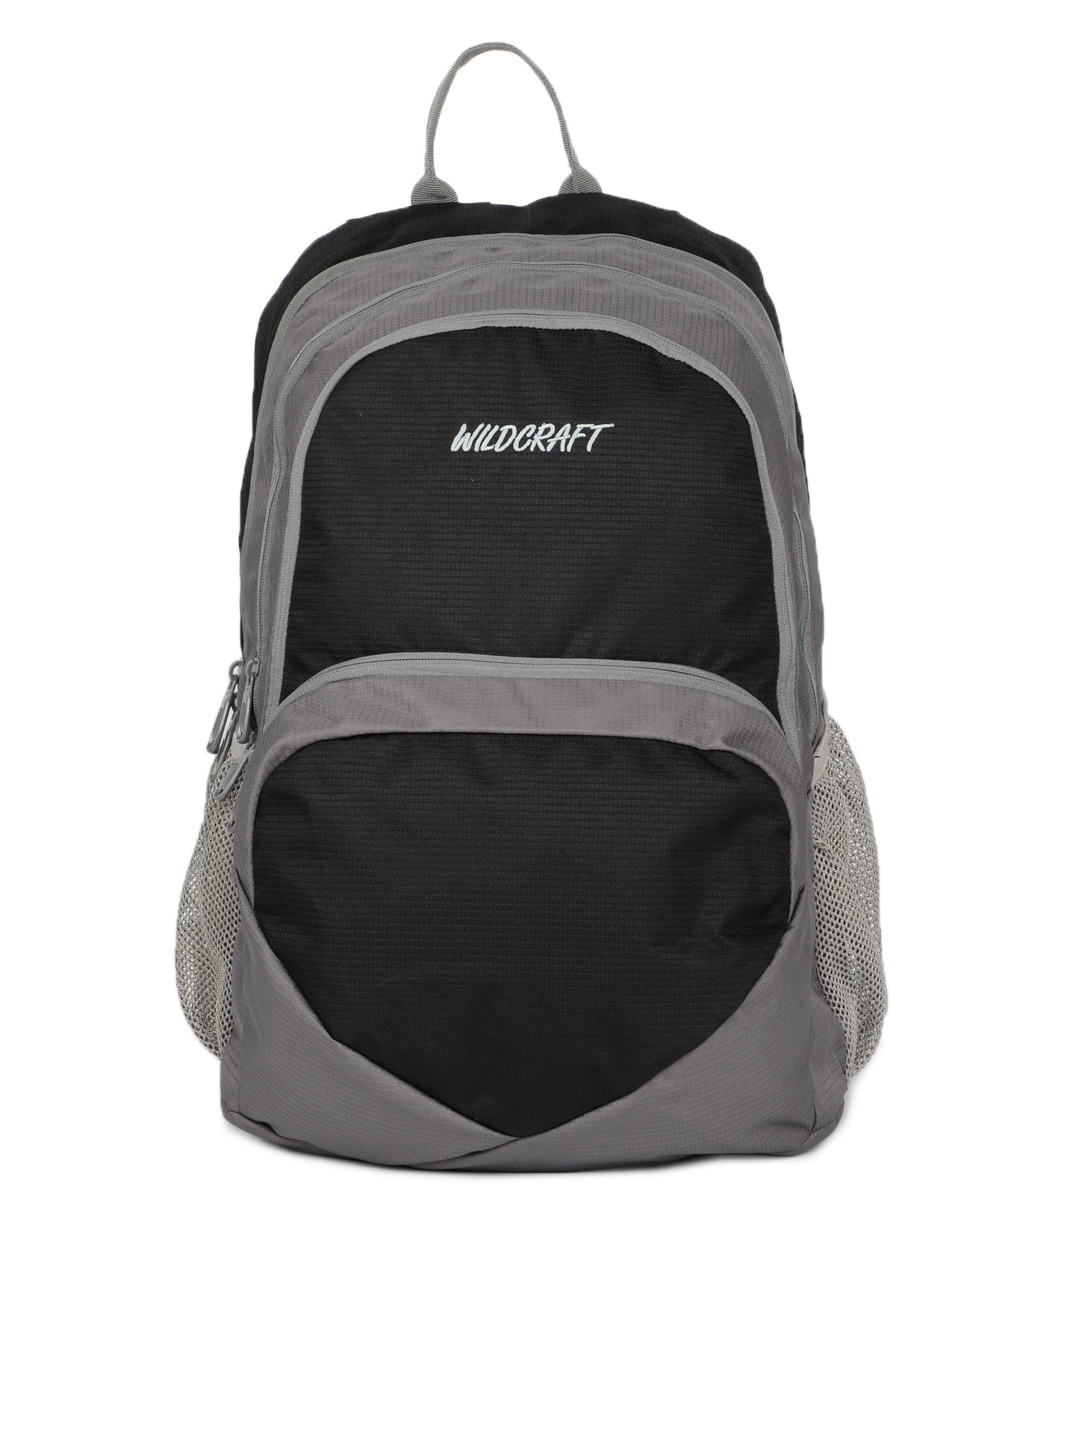 Wildcraft Unisex Reflex Black Backpack